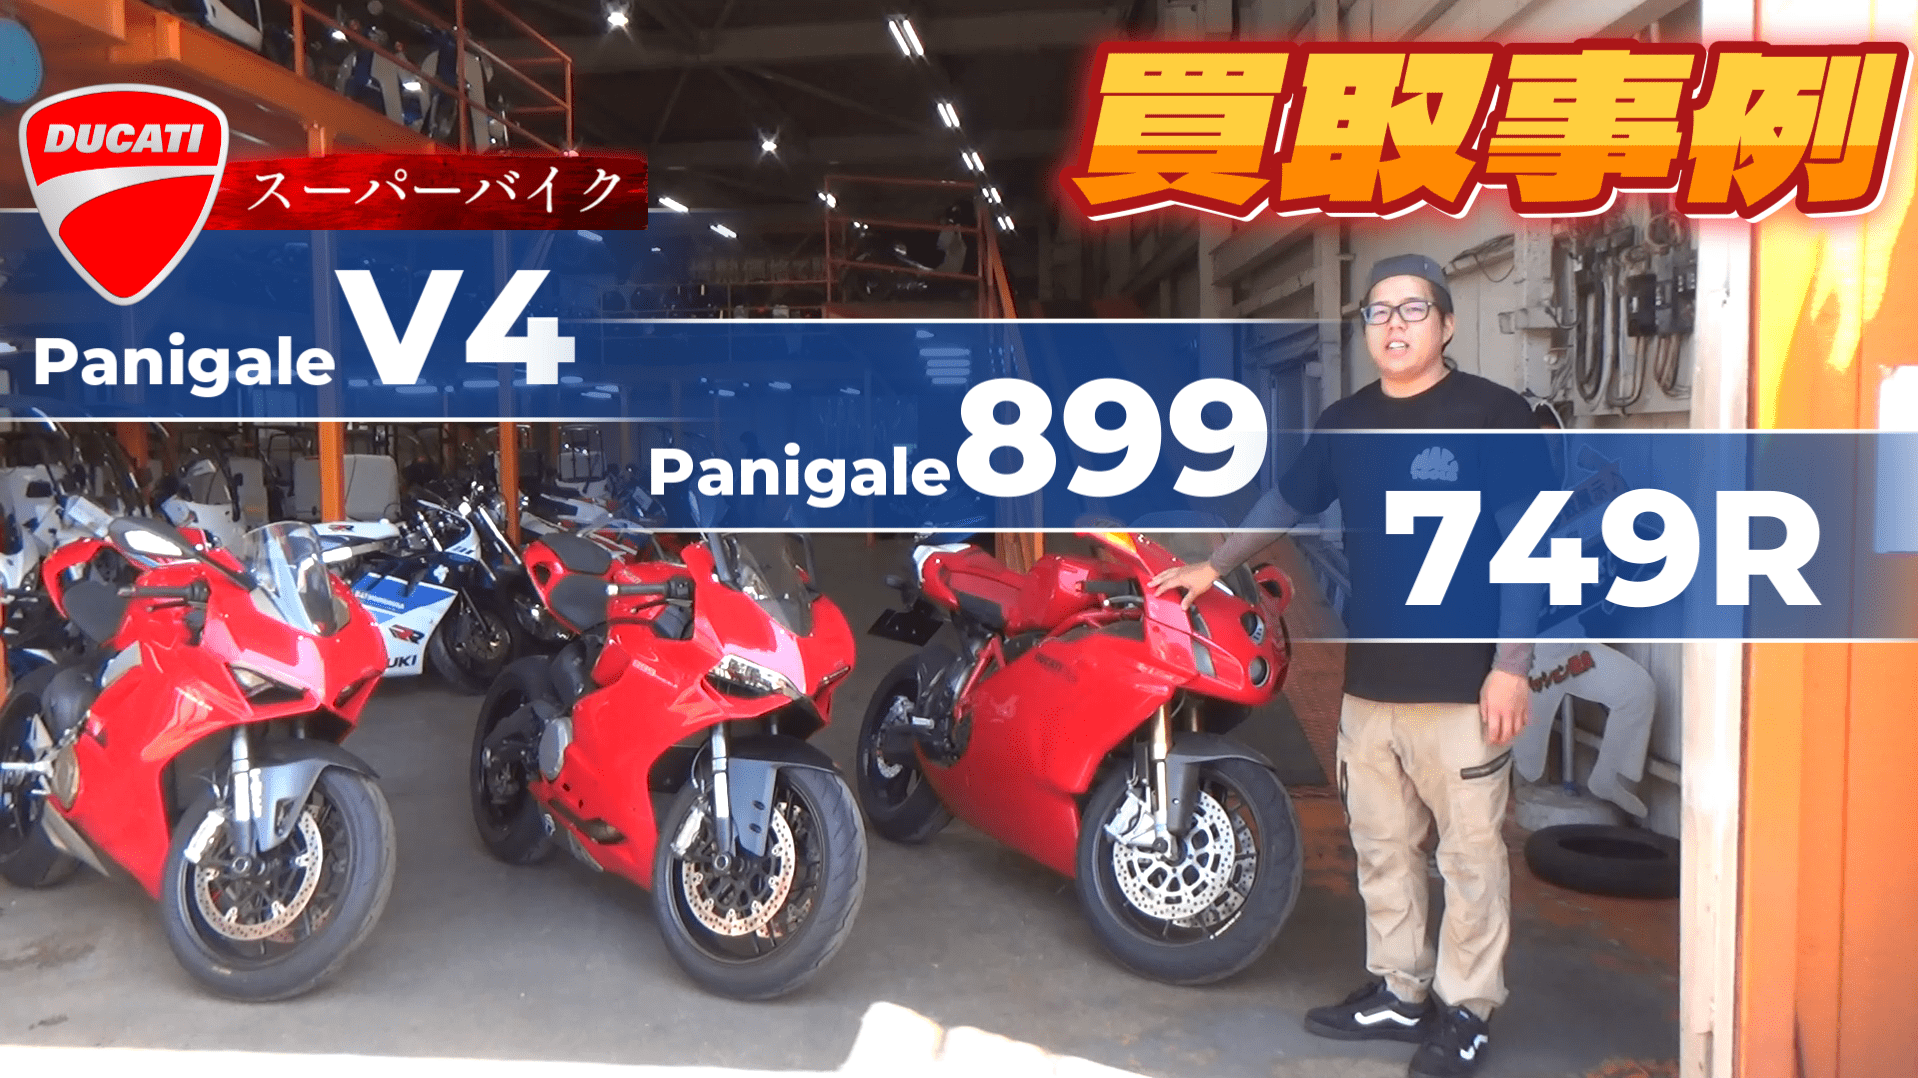 【買取事例】DUCATIスーパーバイク3連発！パニガーレV4・899・749R